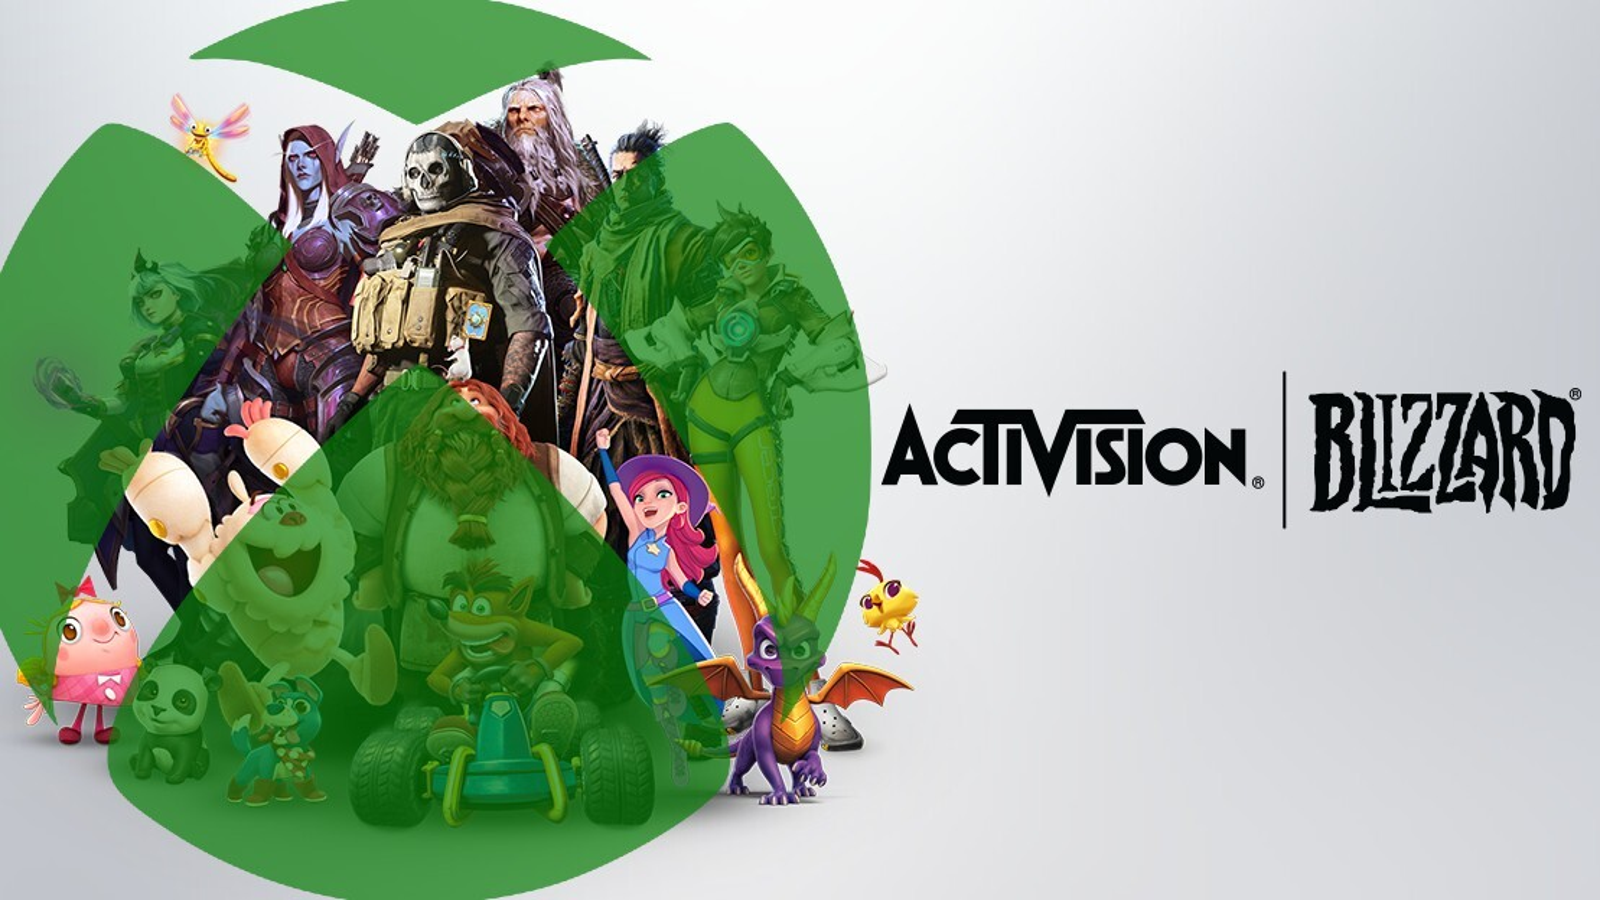 Microsoft Activision Blizzard acquisition: How'd it happen?